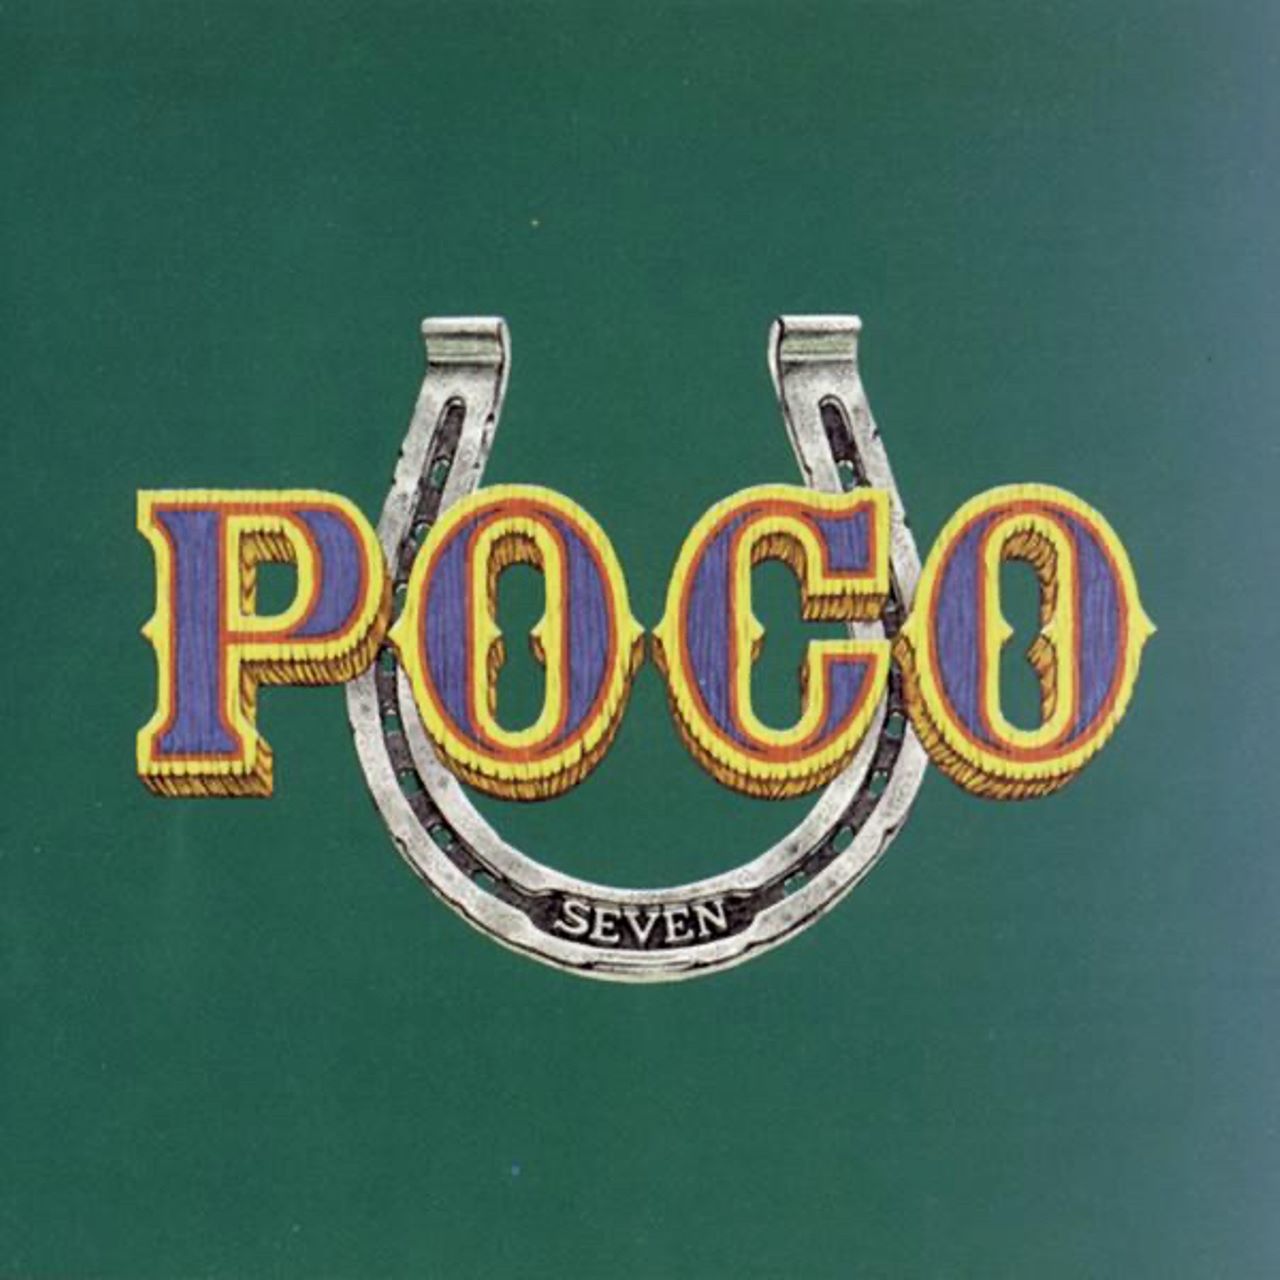 Poco – Seven cover album